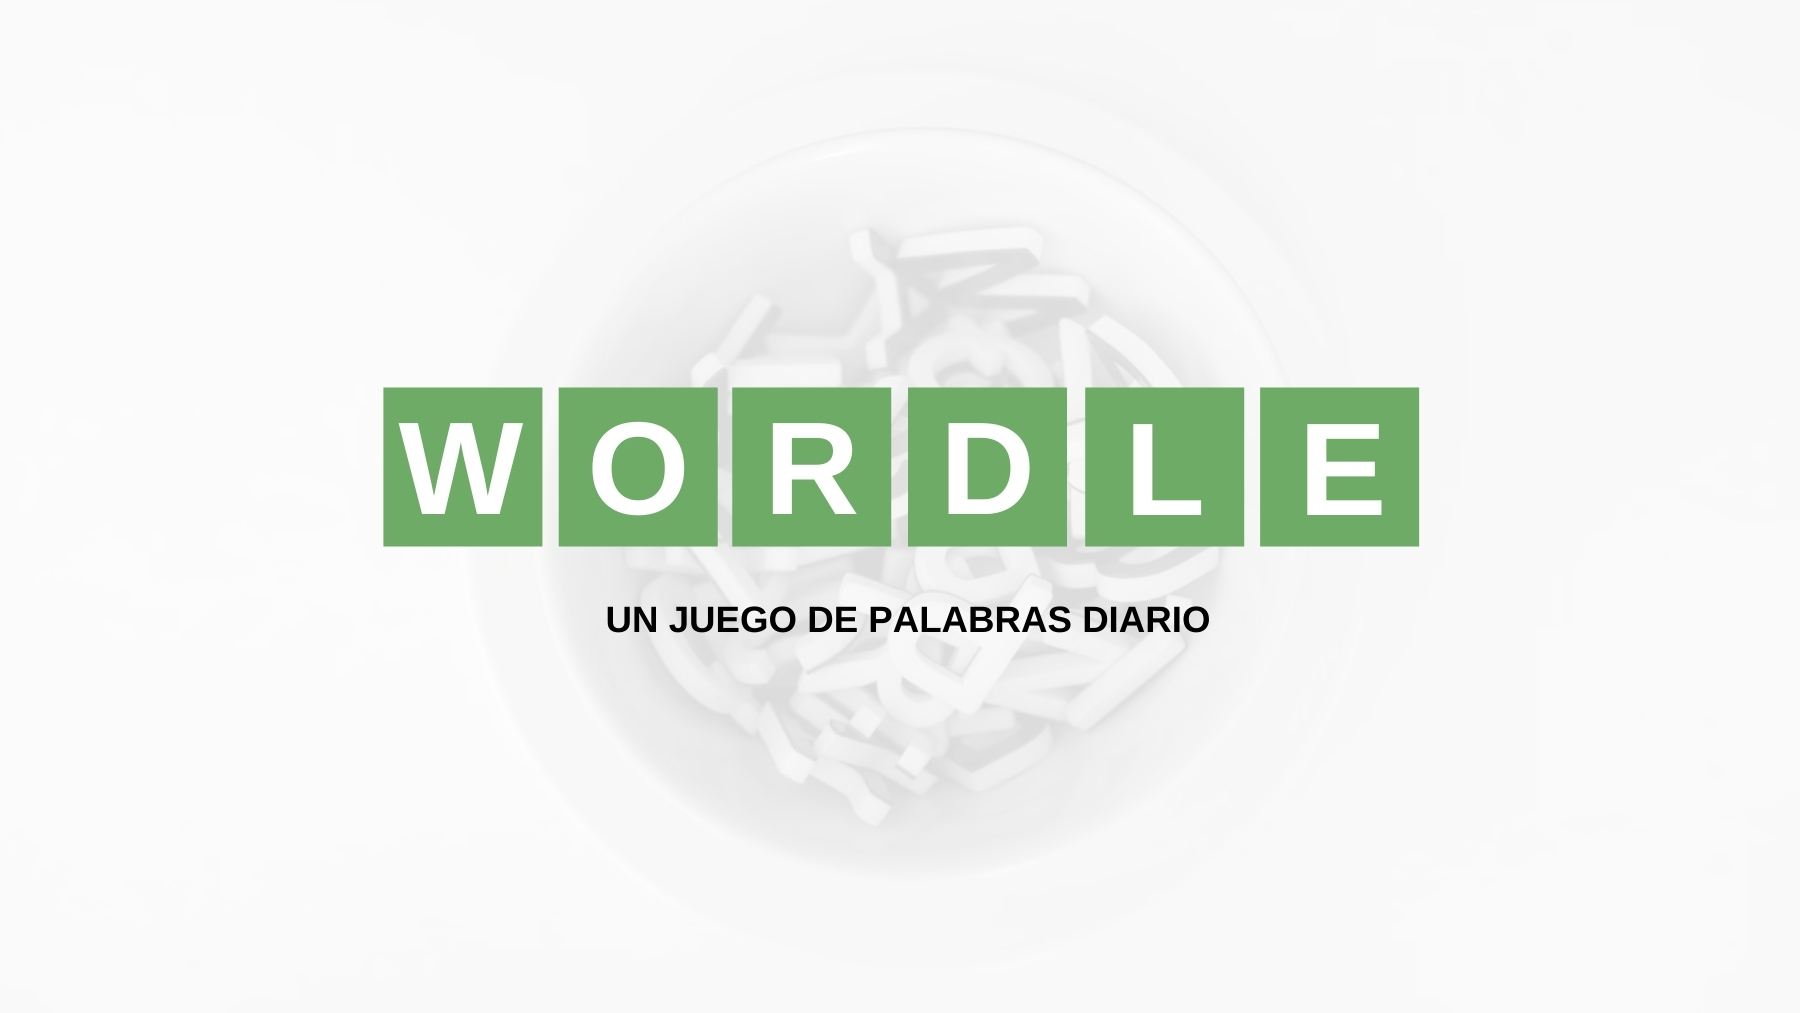 Solución palabra Wordle español, científico y con tildes hoy, viernes 22 de abril de 2022